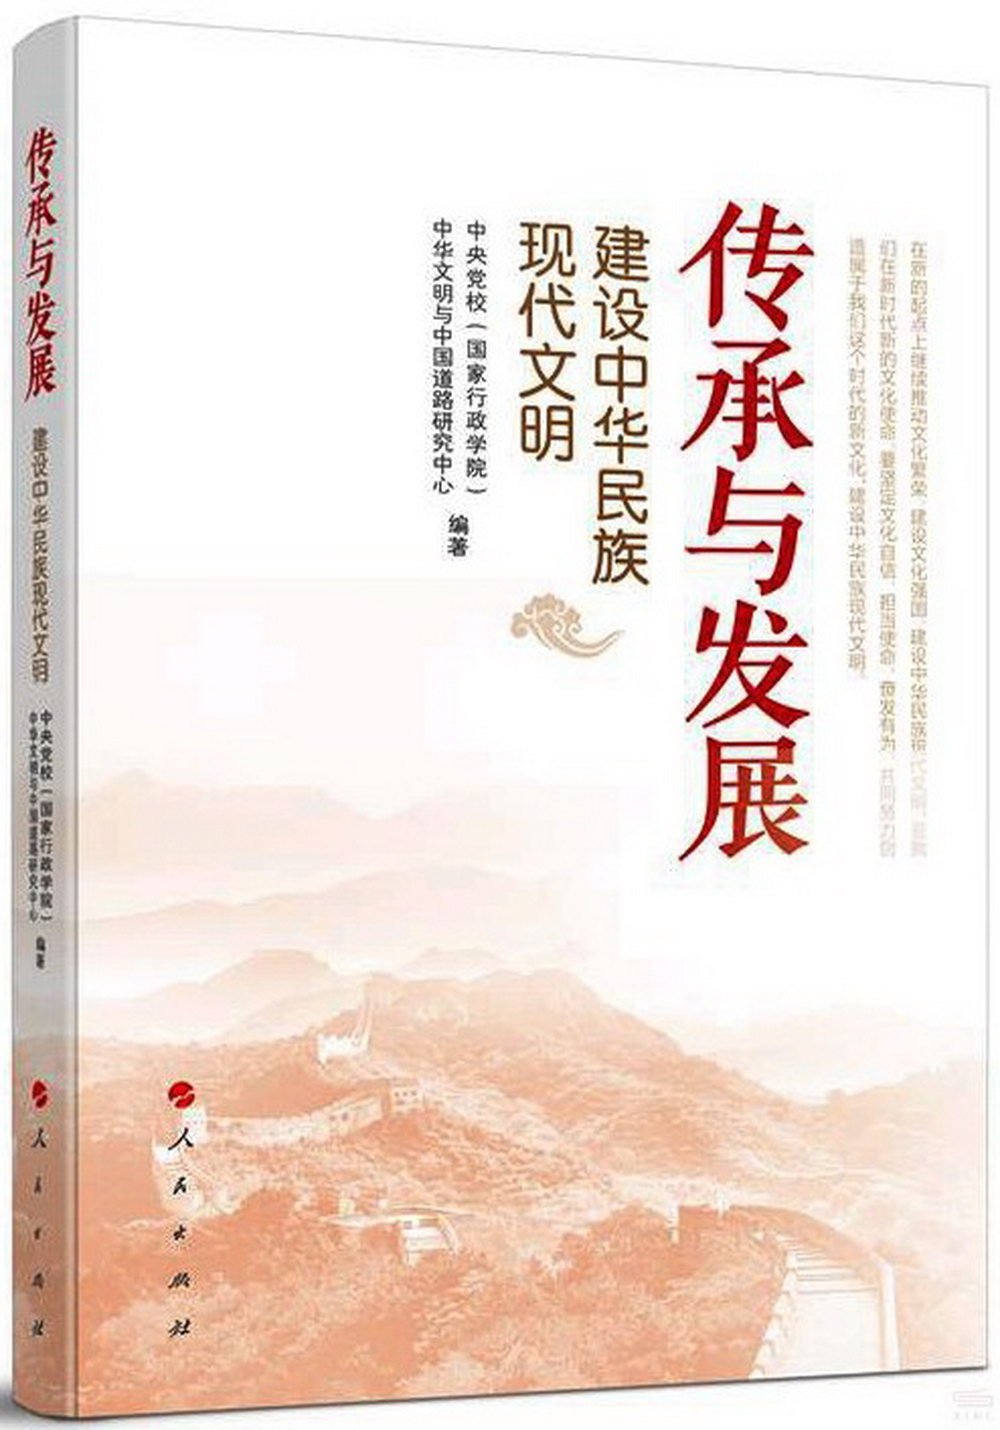 傳承與發展：建設中華民族現代文明